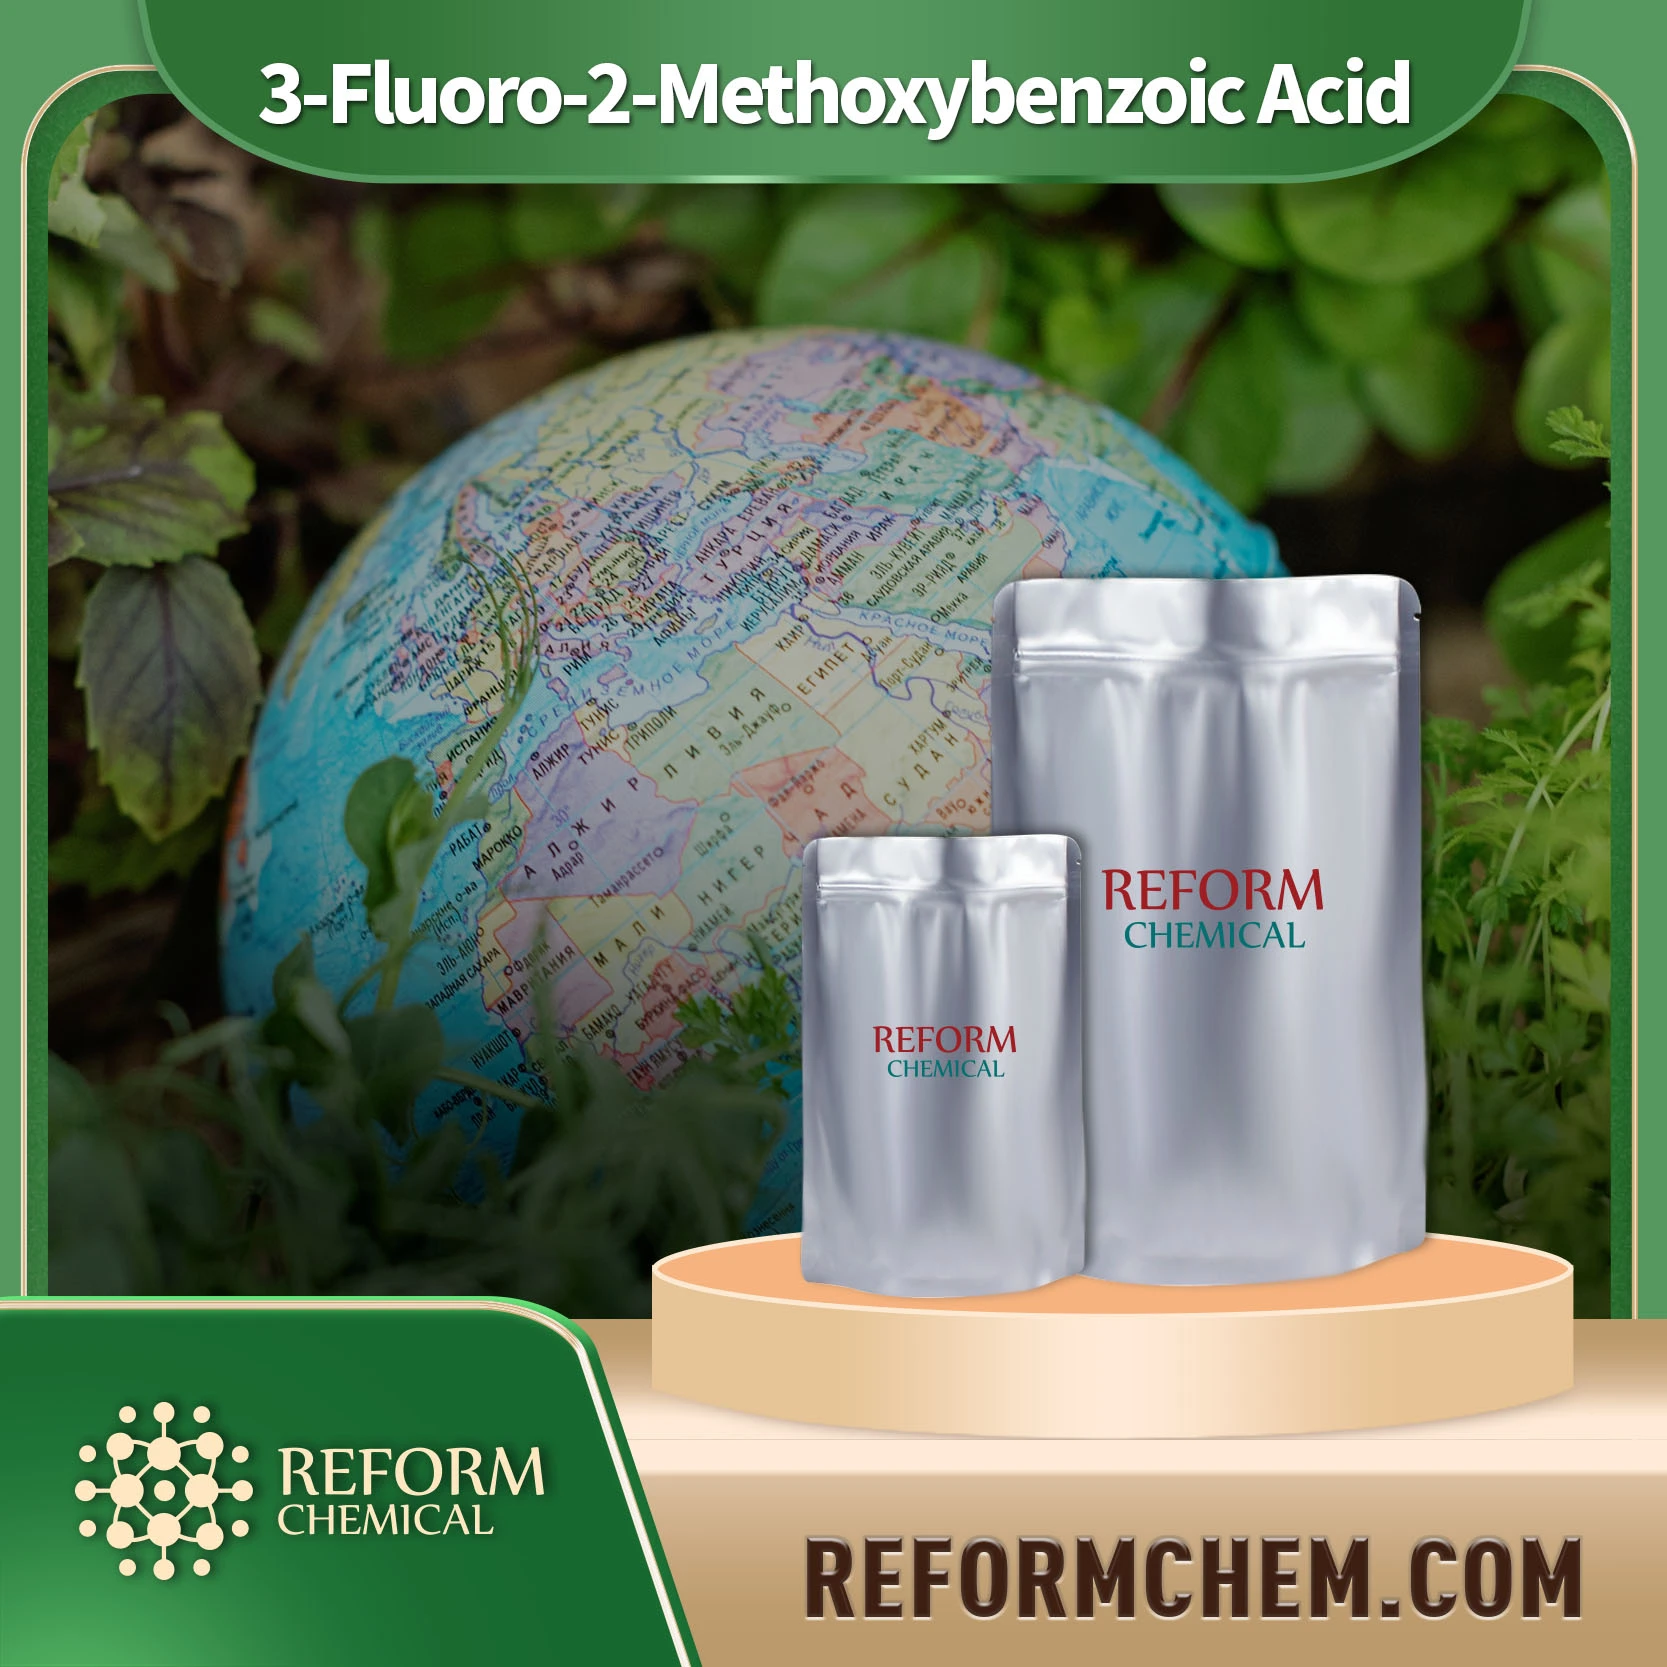 3-Fluoro-2-Methoxybenzoic Acid